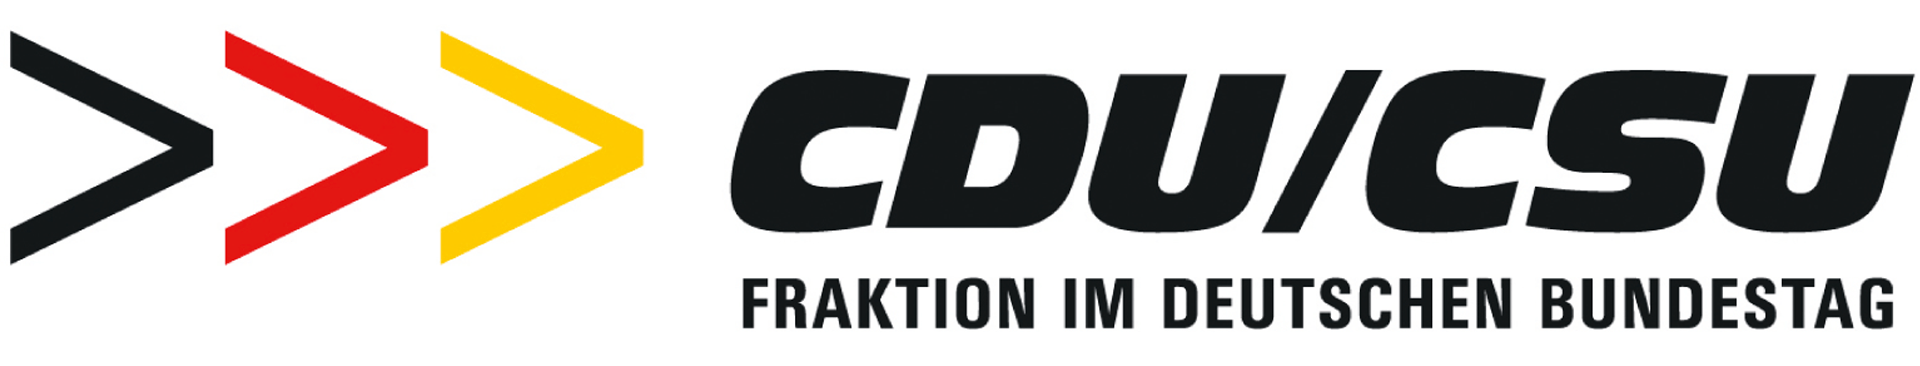 altes Logo der CDU/CSU-Fraktion im Deutschen Bundestag